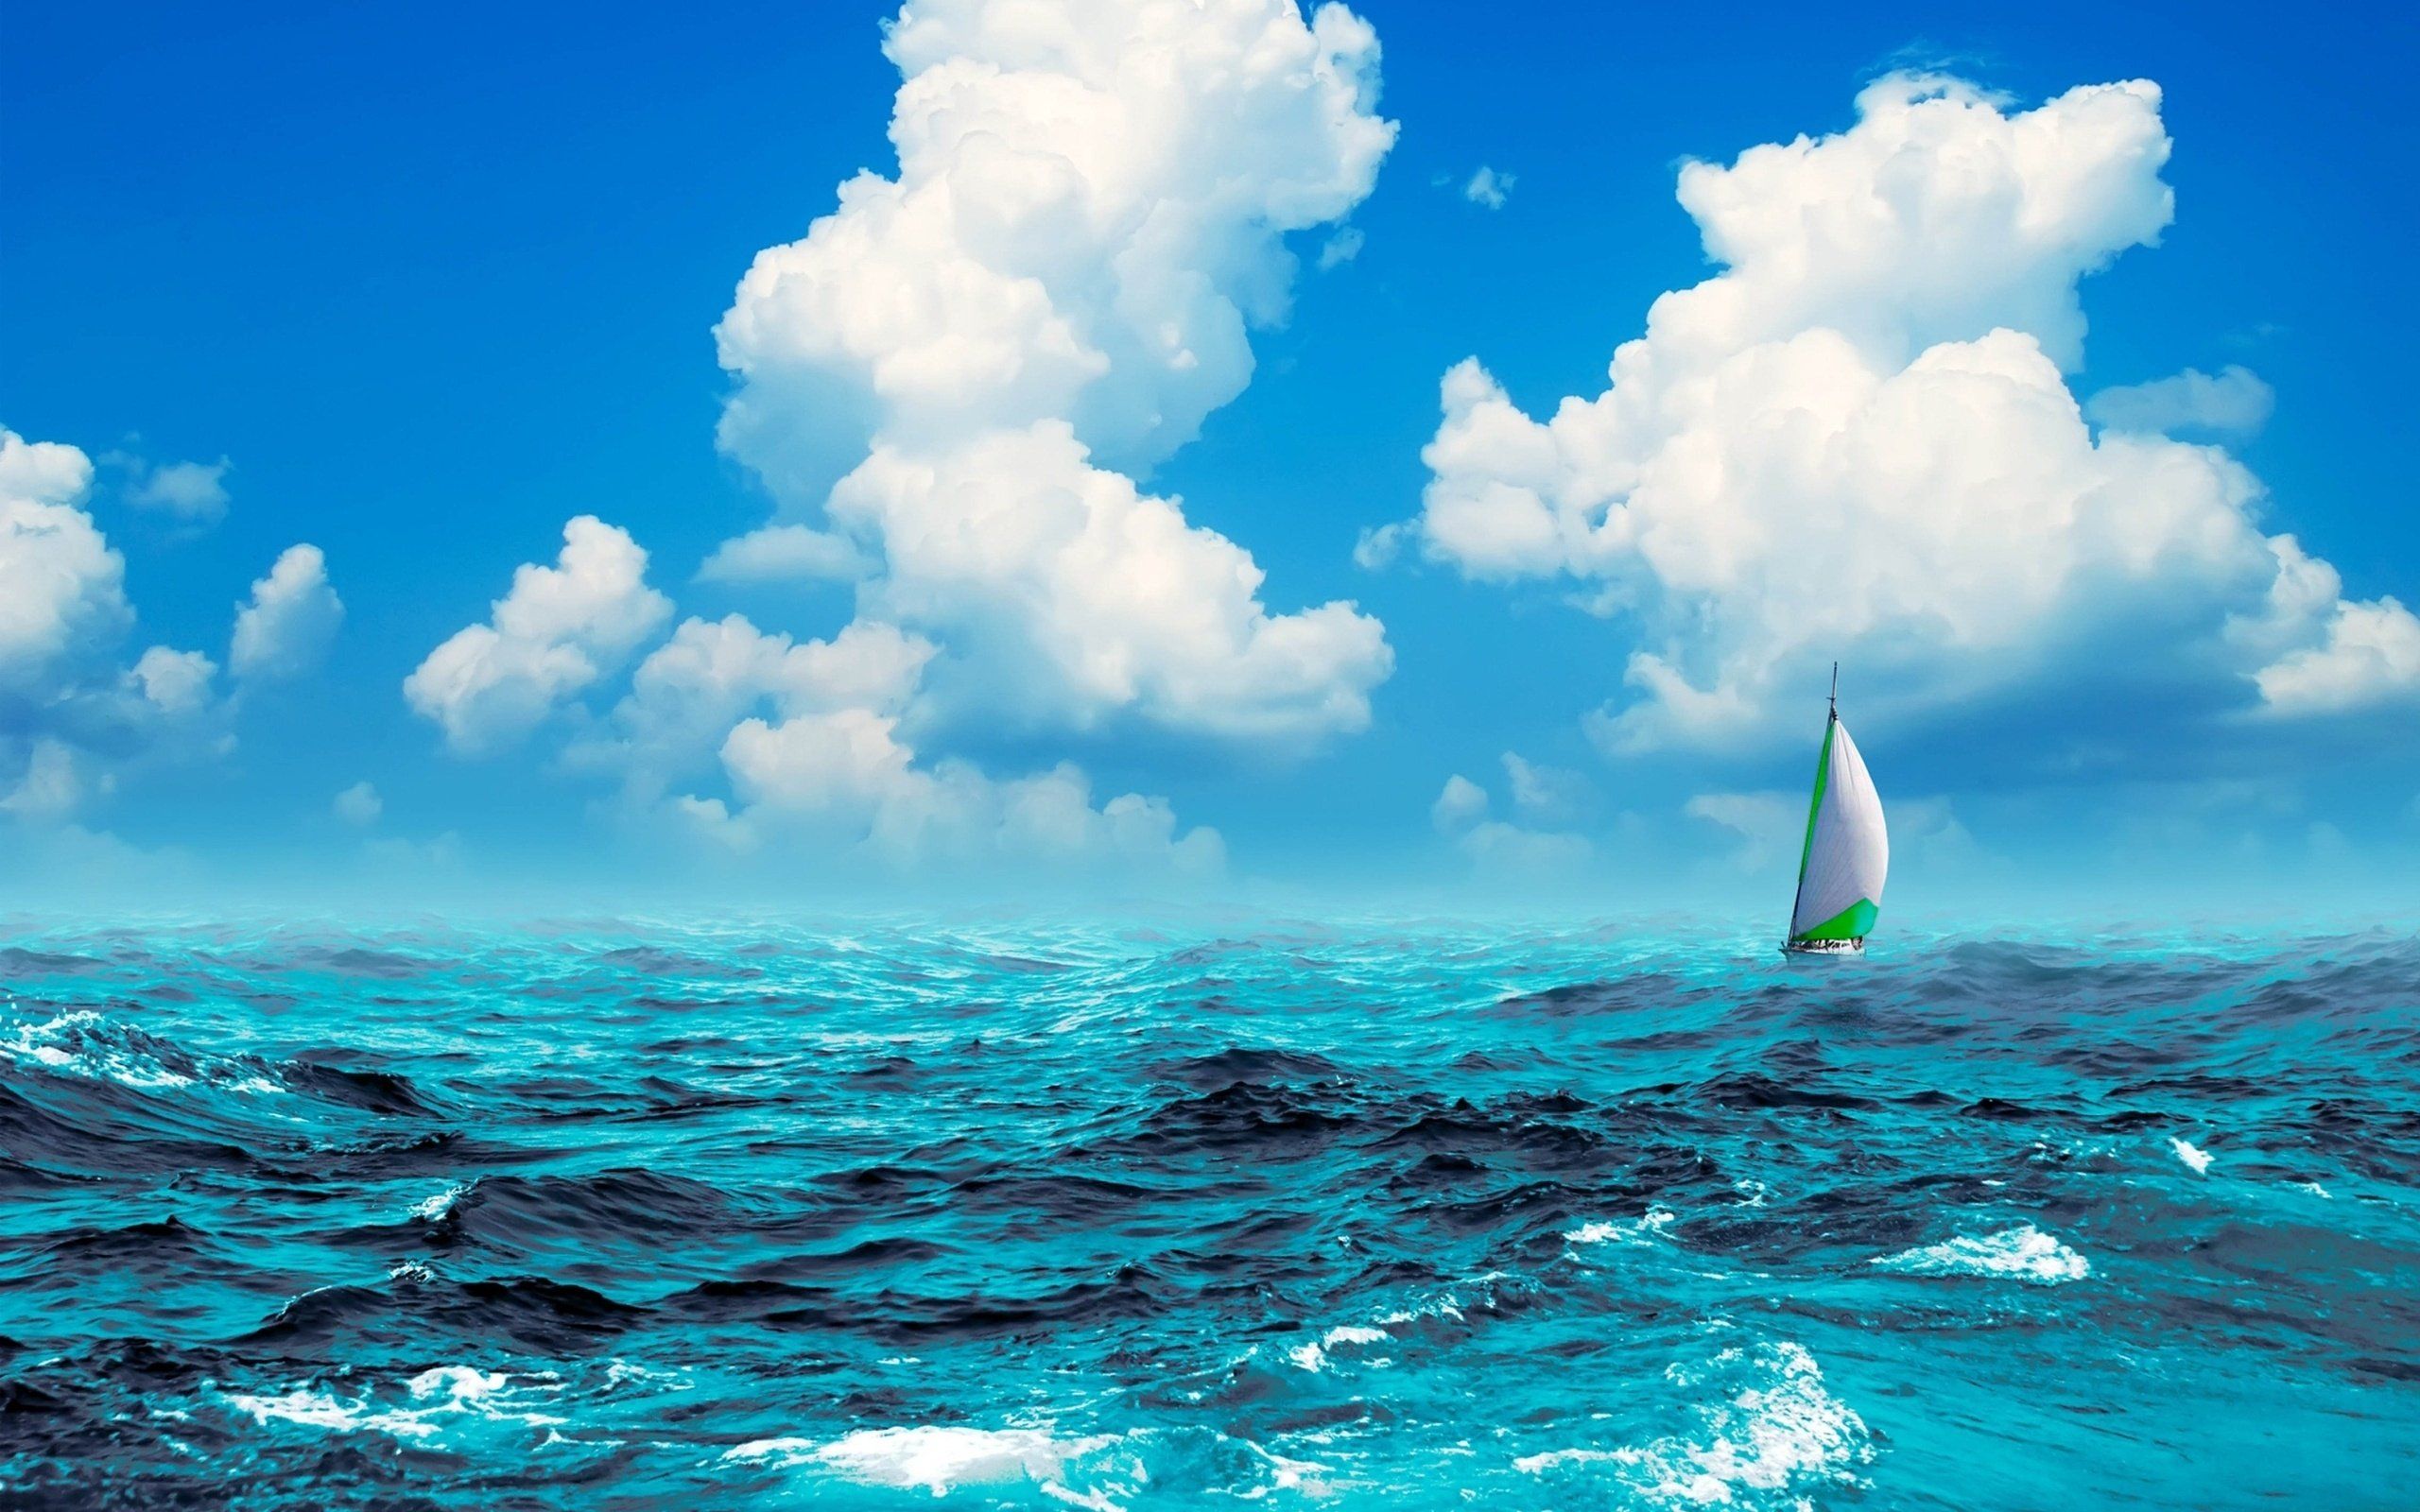 sailboat in ocean images